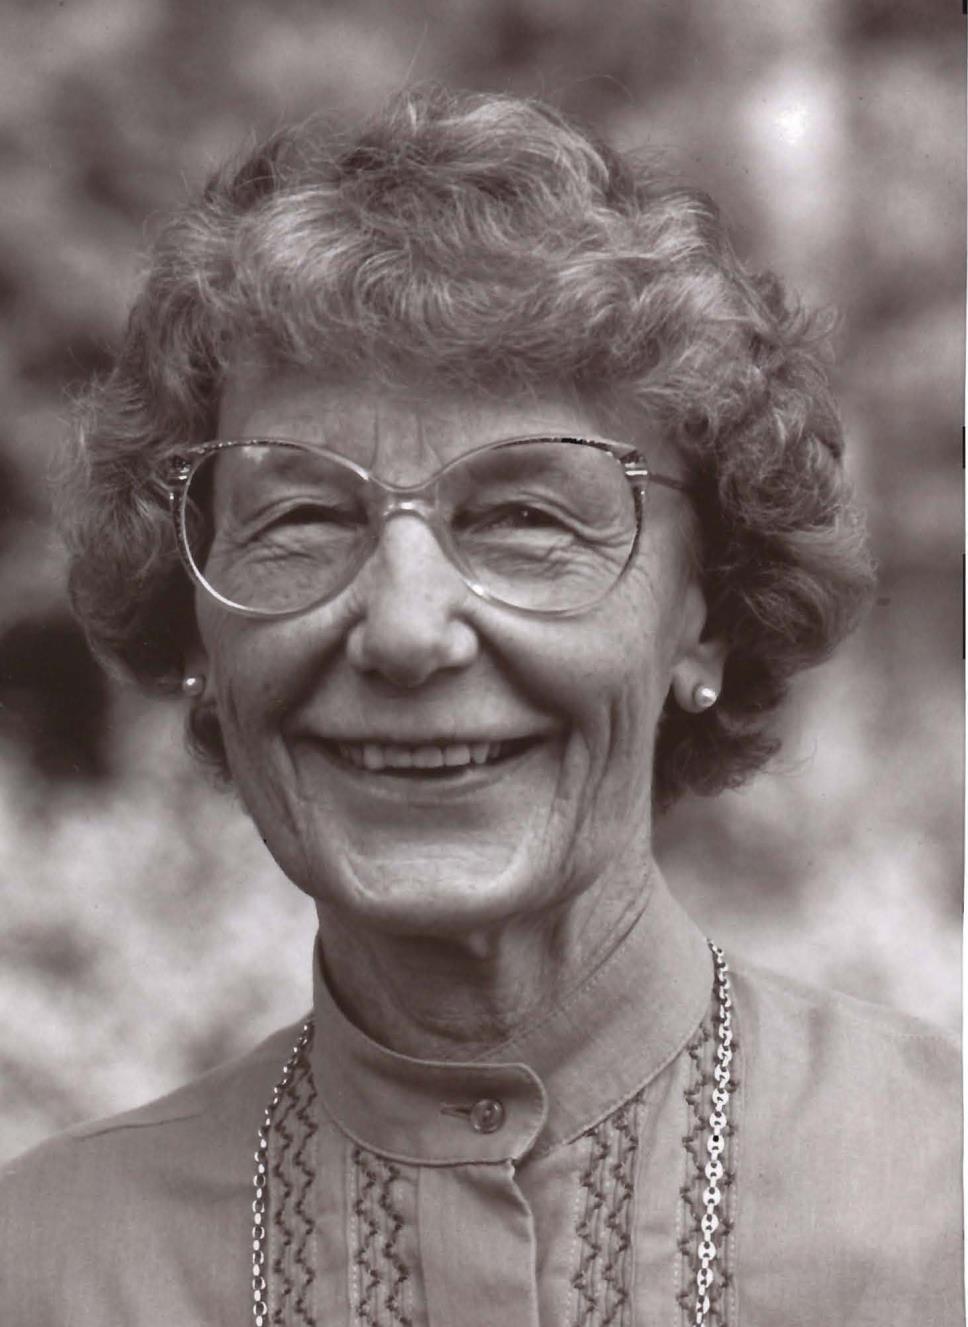 Første kvinnelige leder Ragnhild Sundbye Hun var formann i Norges Naturvernforbund 1972 77 og 1982 83, i en periode preget av stor oppmerksomhet og høyt konfliktnivå rundt natur- og miljøvernarbeidet.